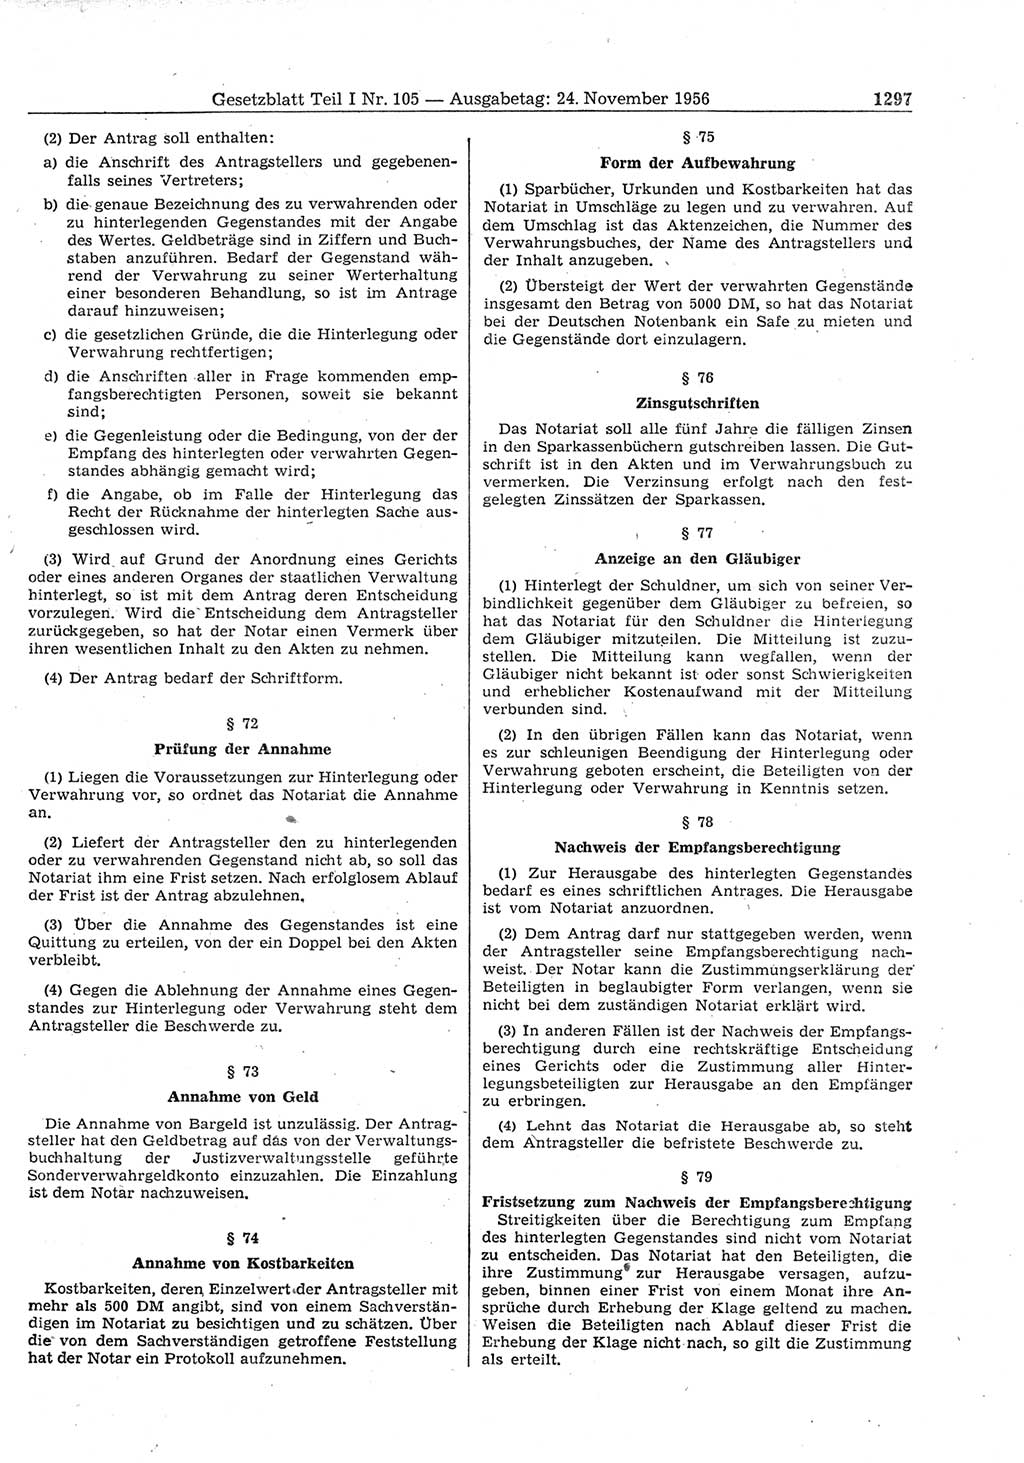 Gesetzblatt (GBl.) der Deutschen Demokratischen Republik (DDR) Teil Ⅰ 1956, Seite 1297 (GBl. DDR Ⅰ 1956, S. 1297)